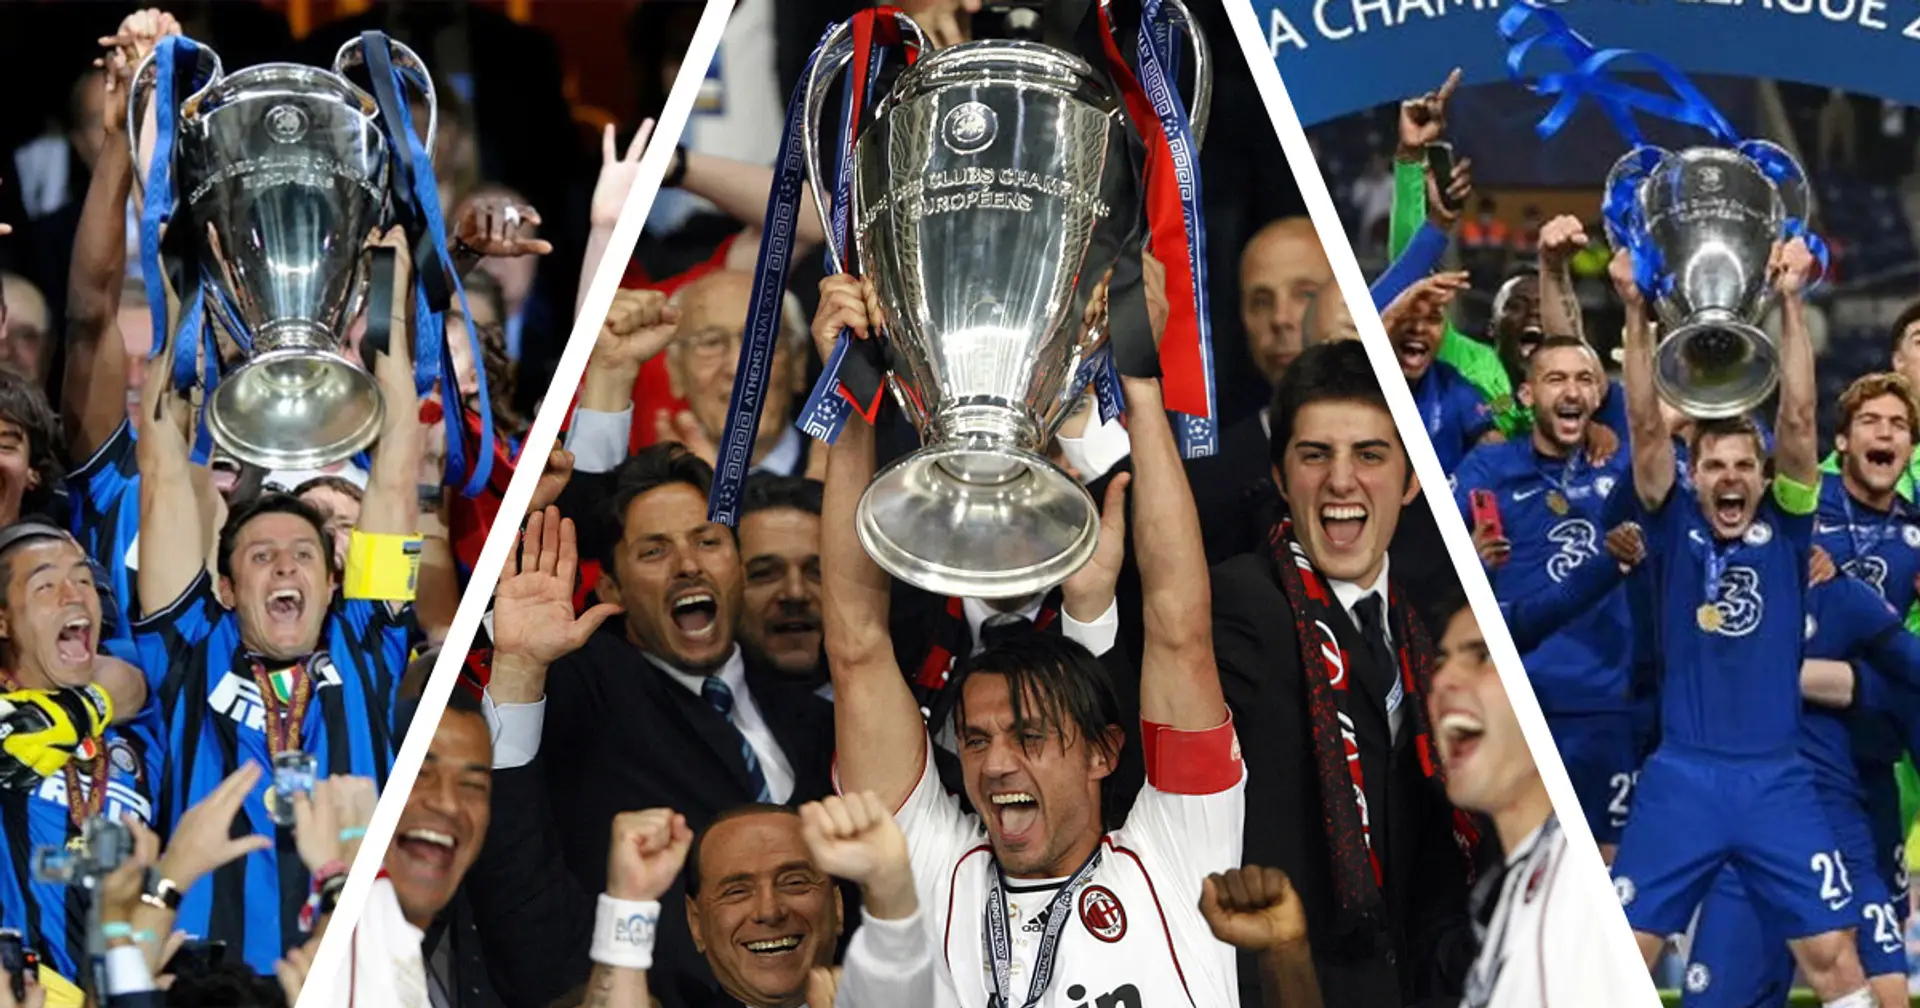 Il più grande sito di statistiche svela le possibilità del Milan in Champions League, Napoli tra i favoriti: La lista completa